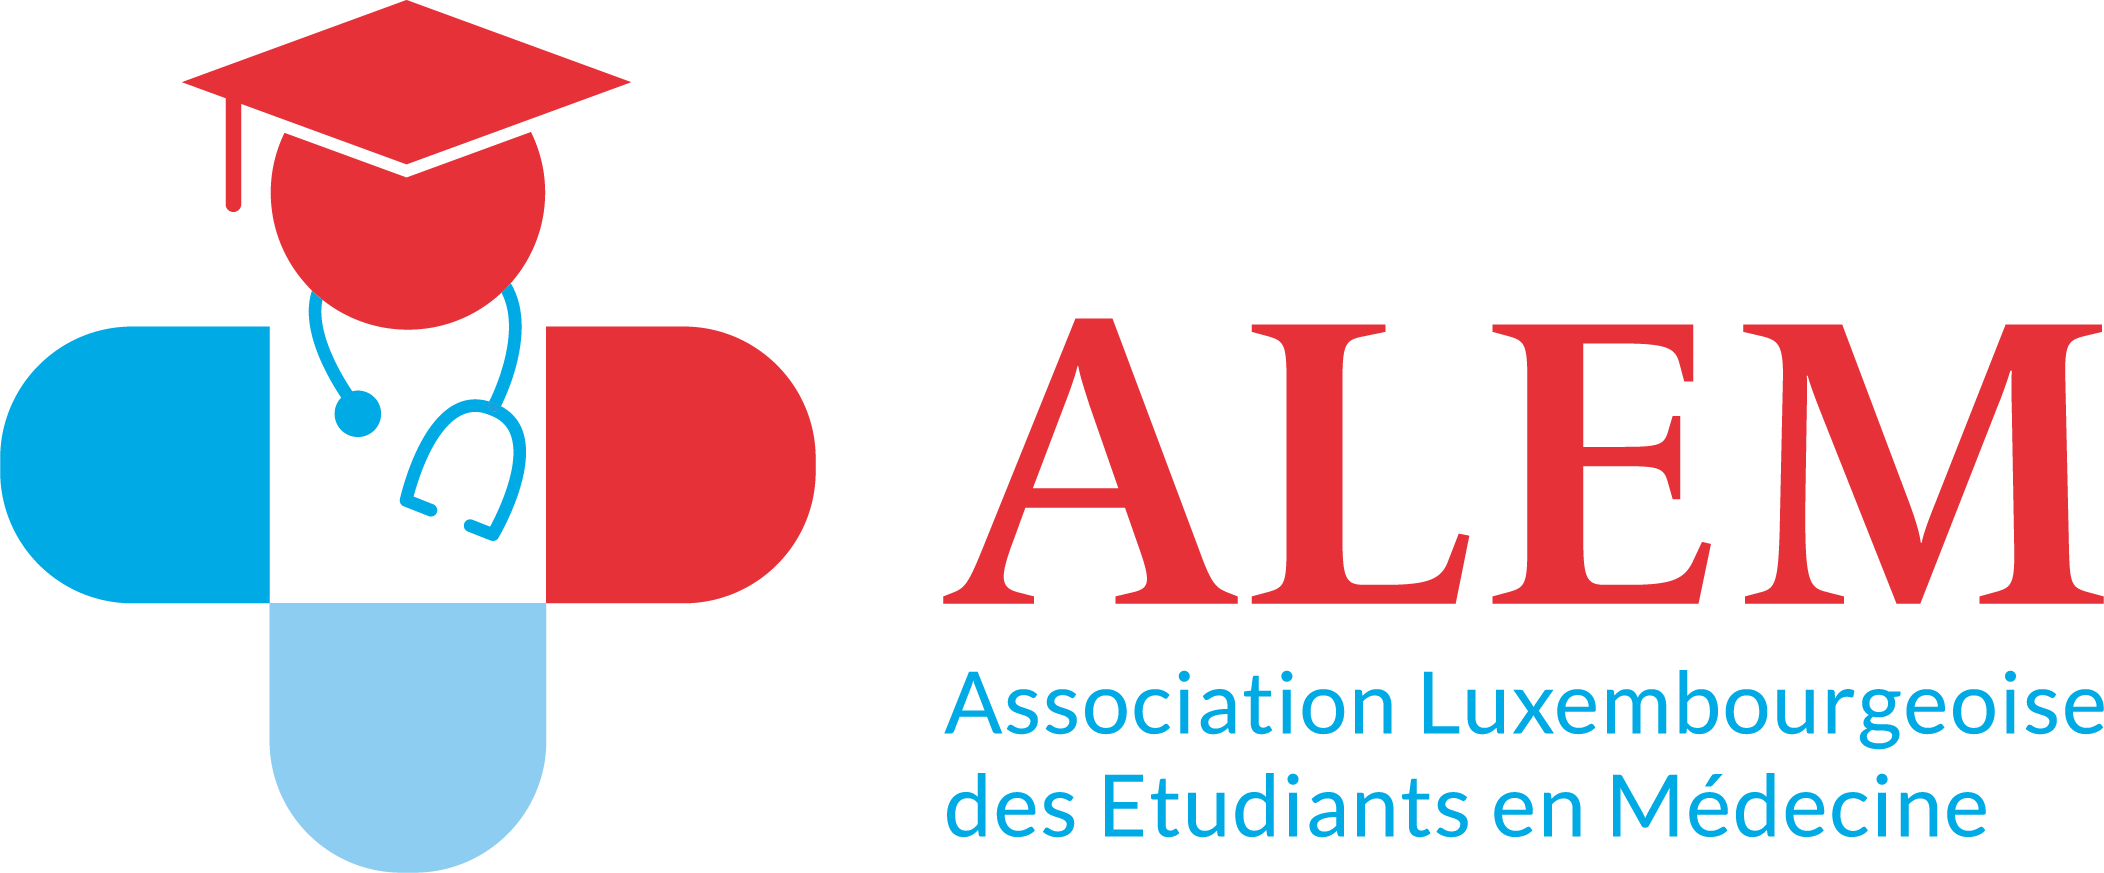 Association Luxembourgeoise des Etudiants en Médecine